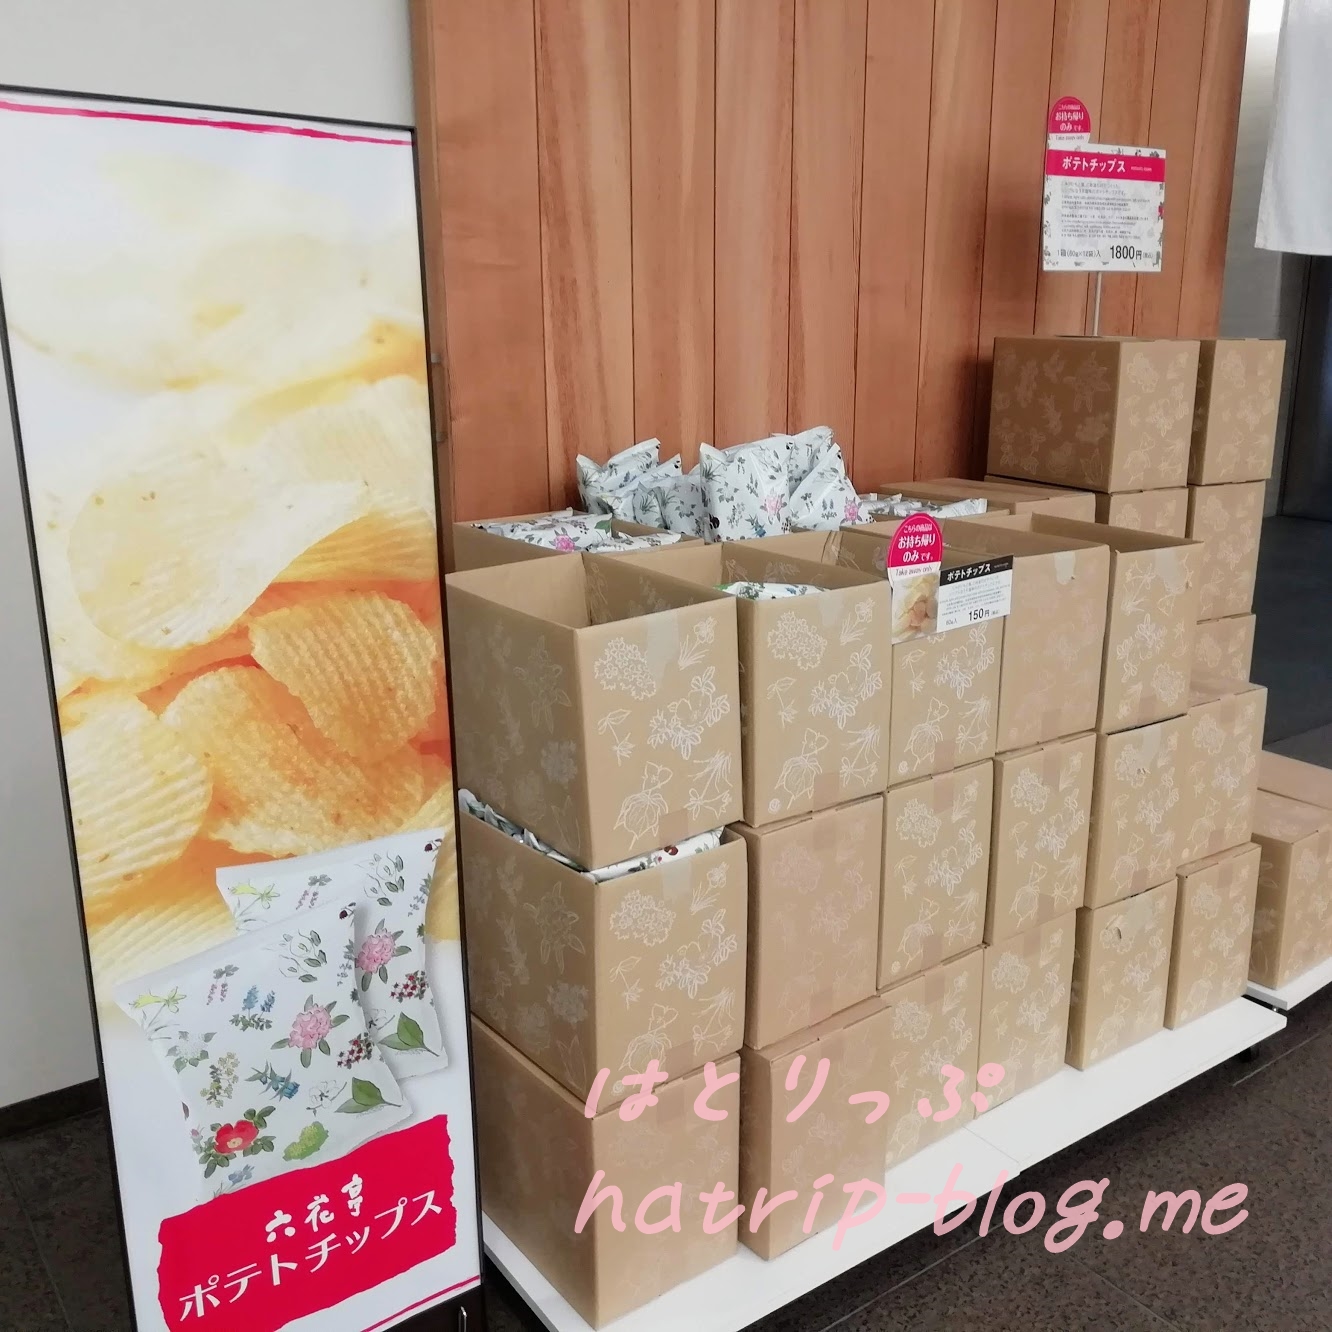 北海道 六花亭 札幌本店 店舗 お土産お菓子 ポテトチップス